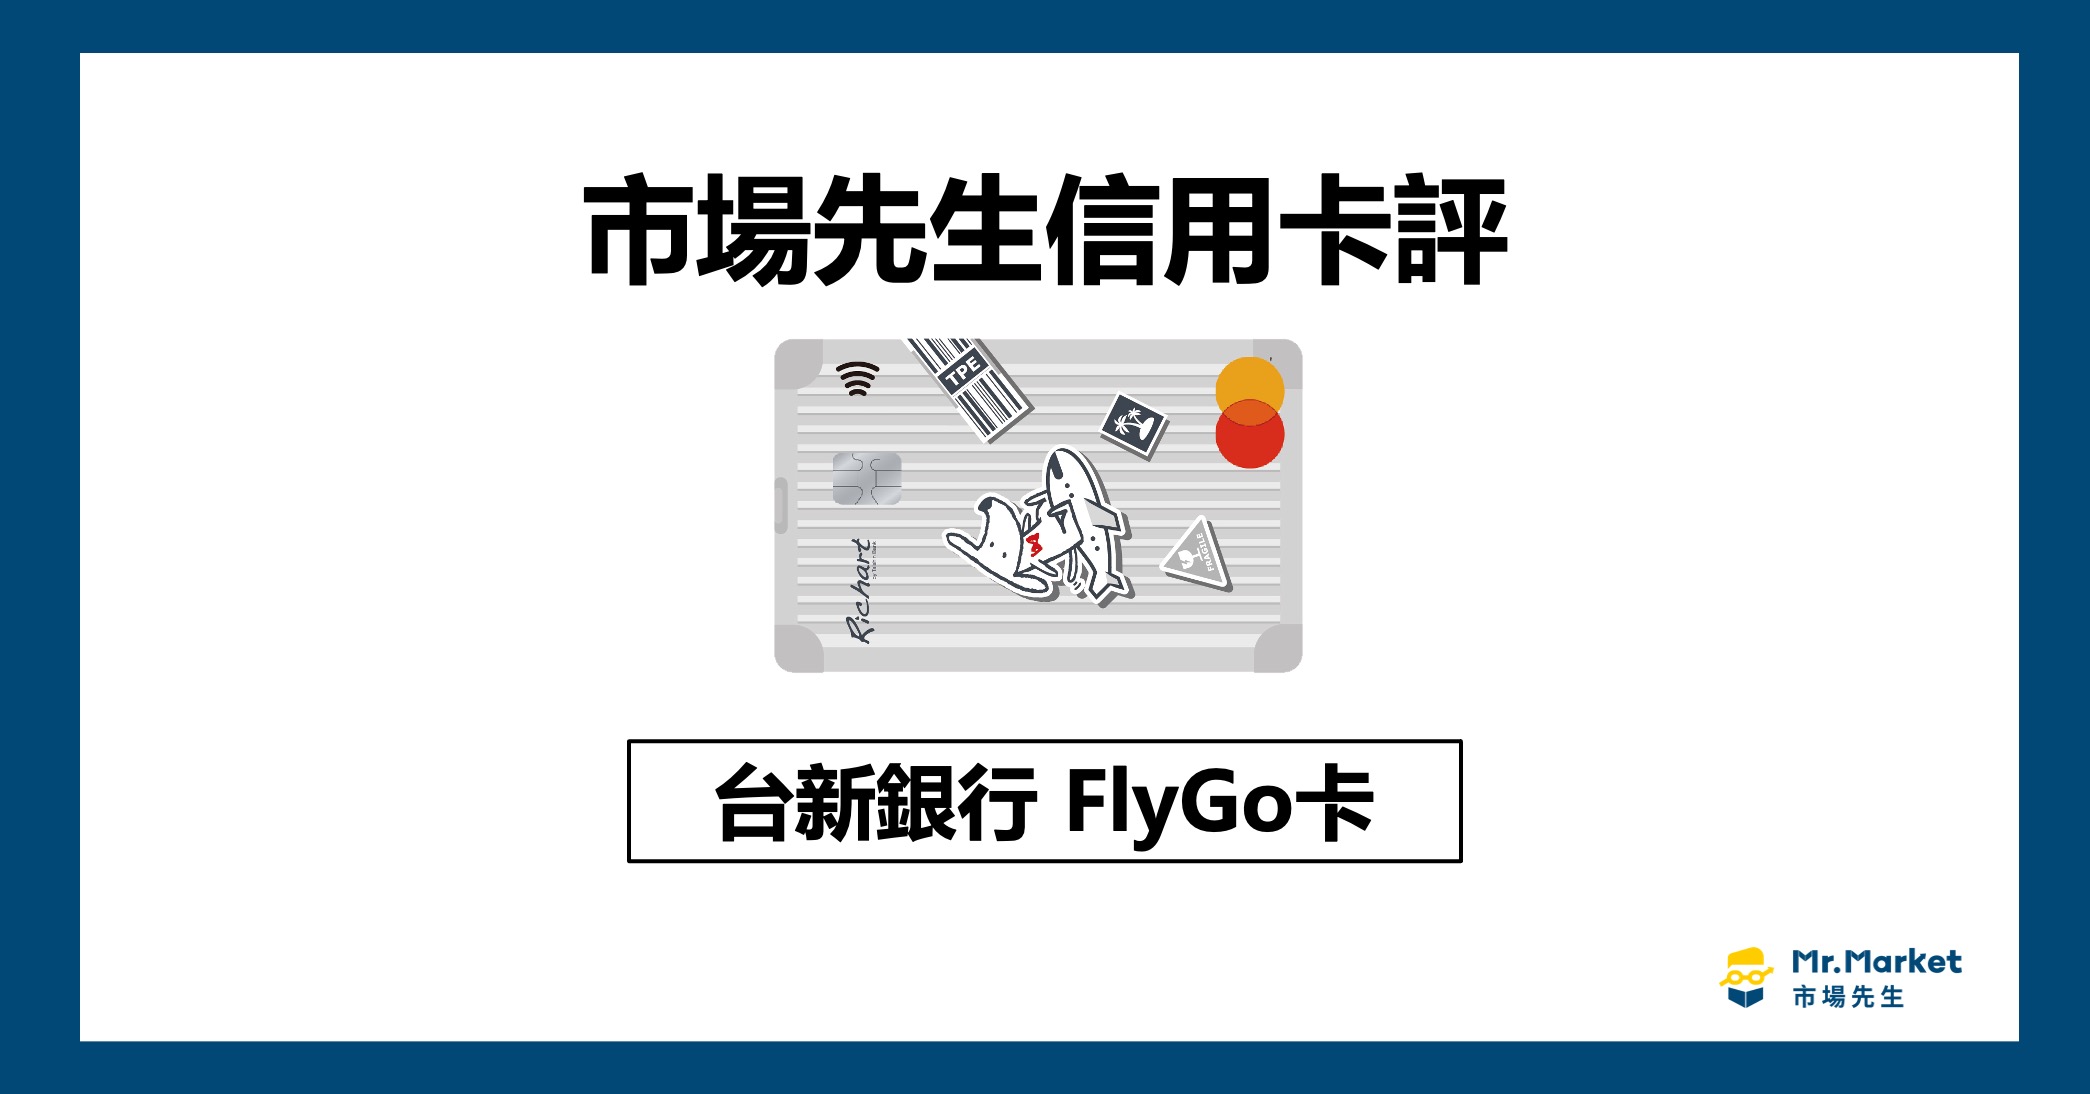 台新FlyGo卡值得辦嗎？《市場先生信用卡評》台新FlyGo卡